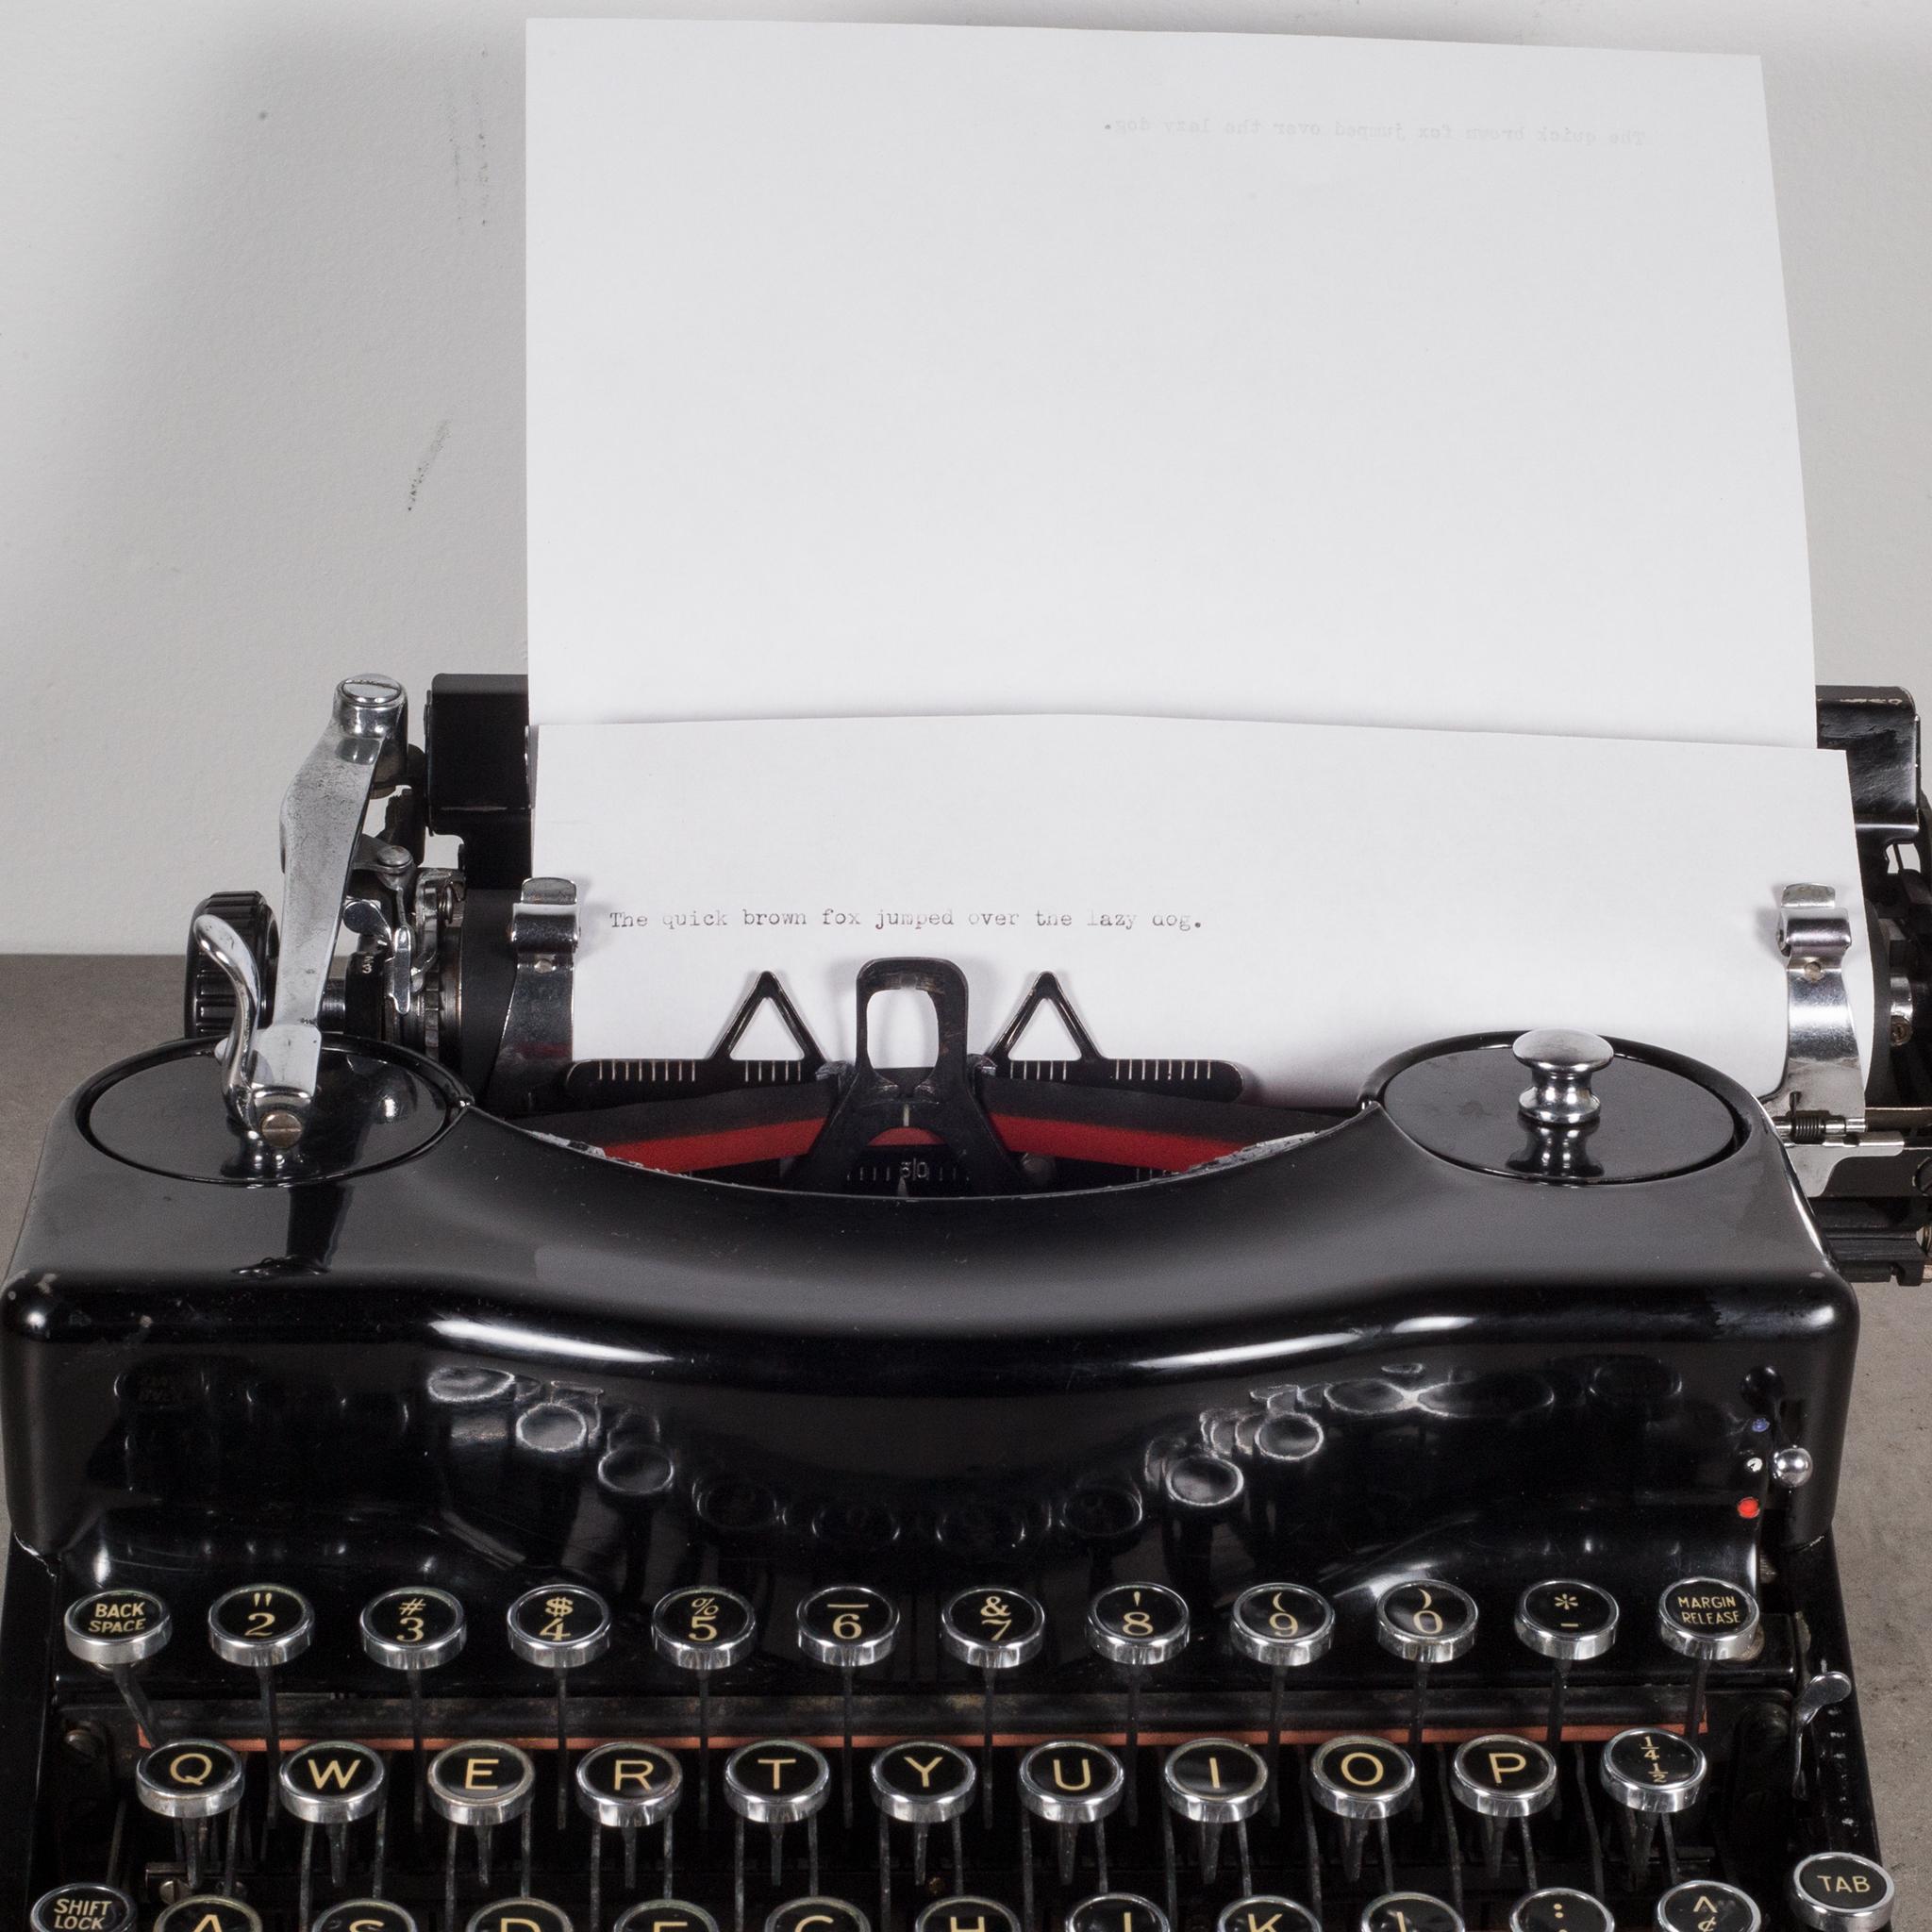 Fully Refurbished Remington Model 1 Typewriter, c.1938 1